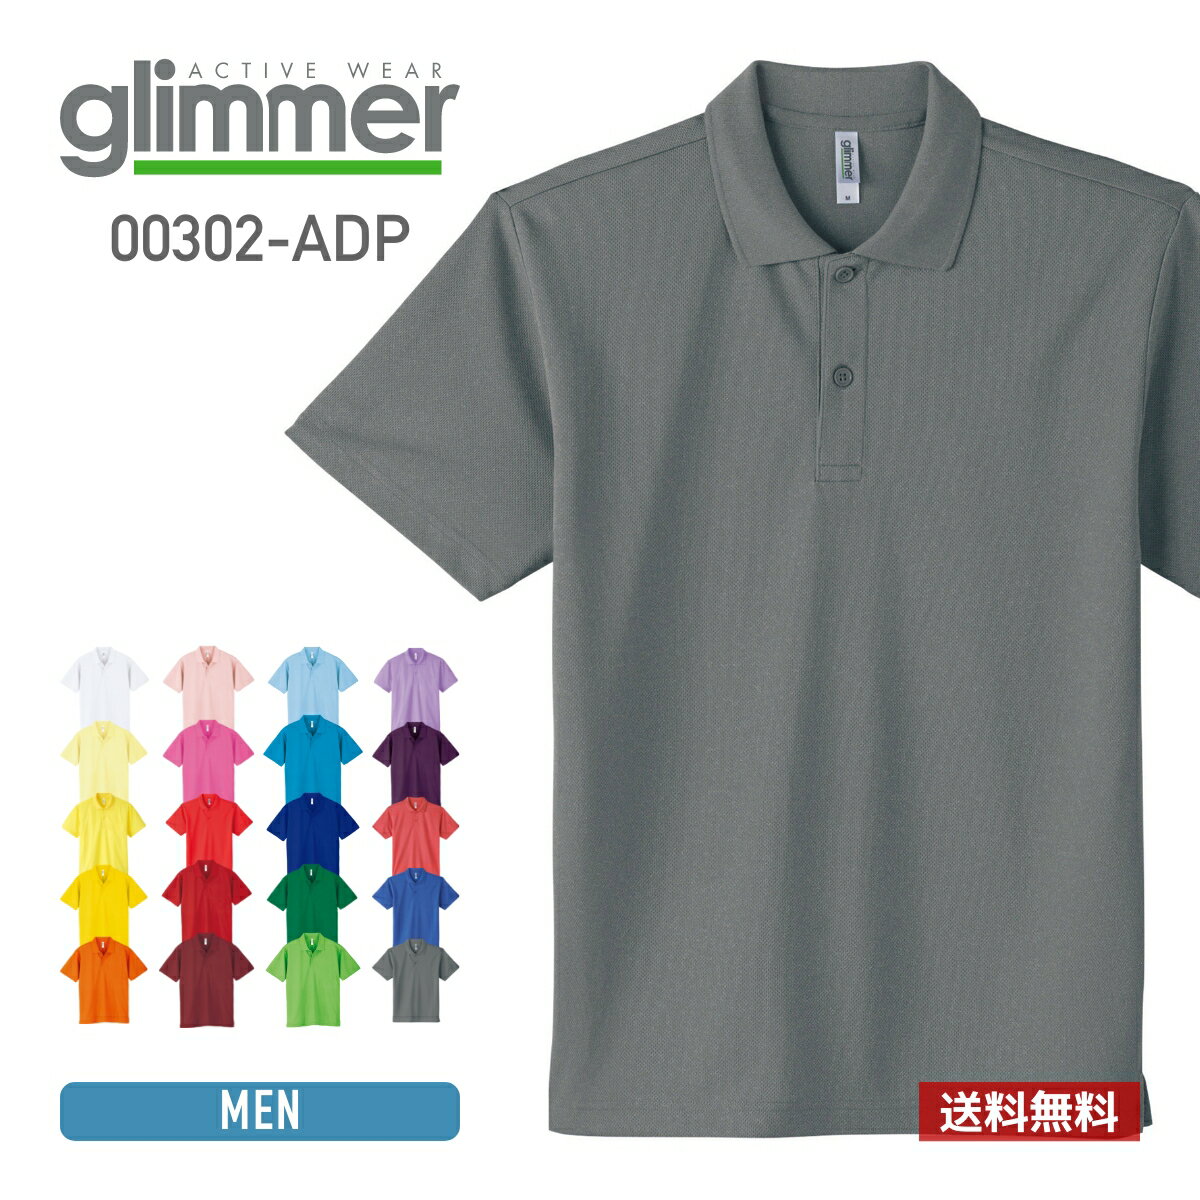 ポロシャツ メンズ レディース 半袖 無地 glimmer グリマー ドライポロシャツ 00302-ADP 送料無料 男女兼用 ユニセッ…